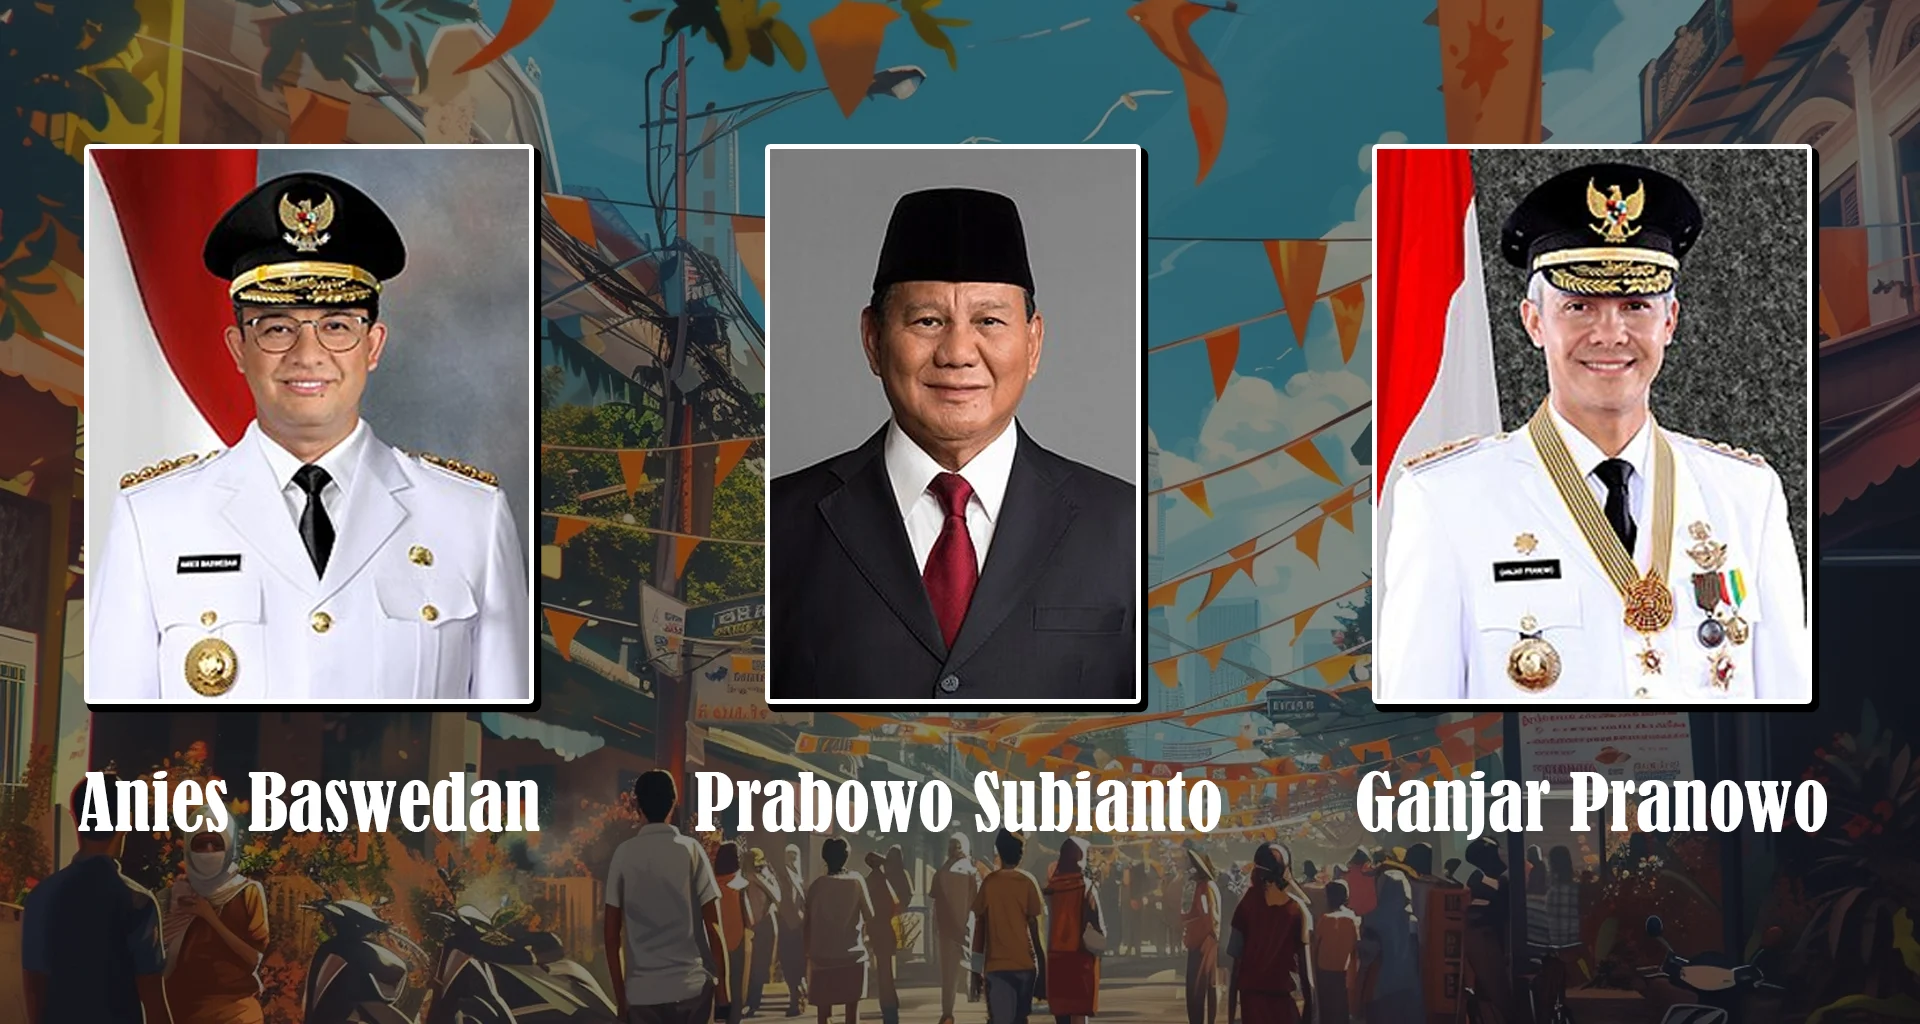 Ein belebter indonesischer Straßenmarkt mit lebhaften Wahlkampfbannern, wo Unterstützer der Präsidentschaftskandidaten in lebhaften Diskussionen zusammenkommen, umgeben von einer Flut von Parteiflaggen und ikonischen Symbolen, die die vielfältigen Wahlmöglichkeiten in der kommenden Wahl repräsentieren.